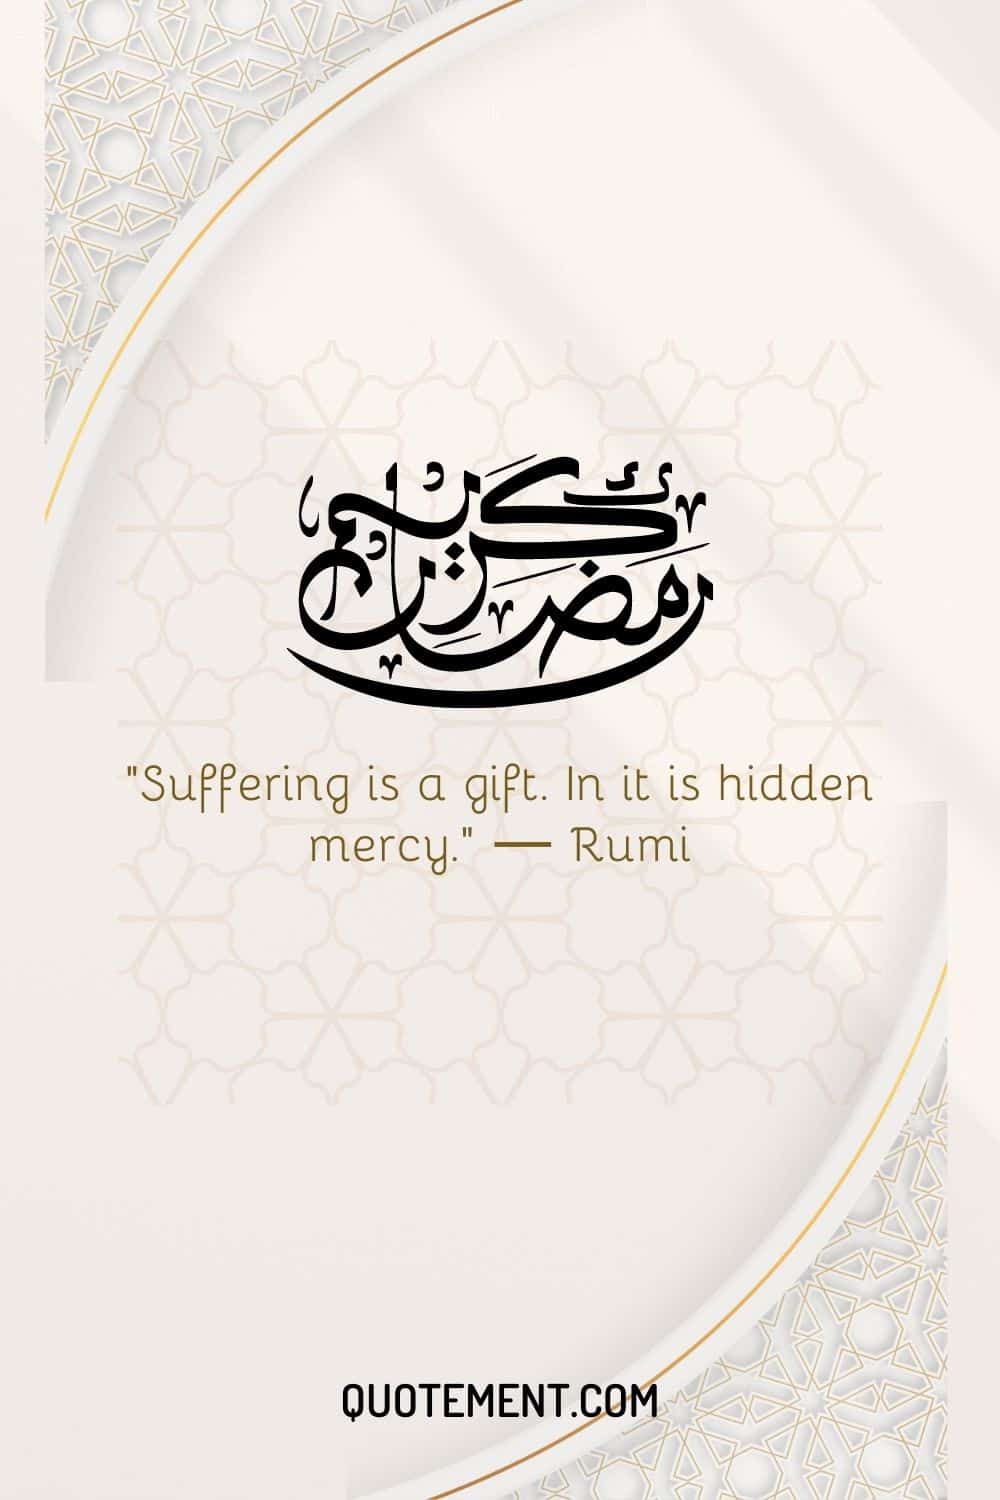 Suffering is a gift. In it is hidden mercy